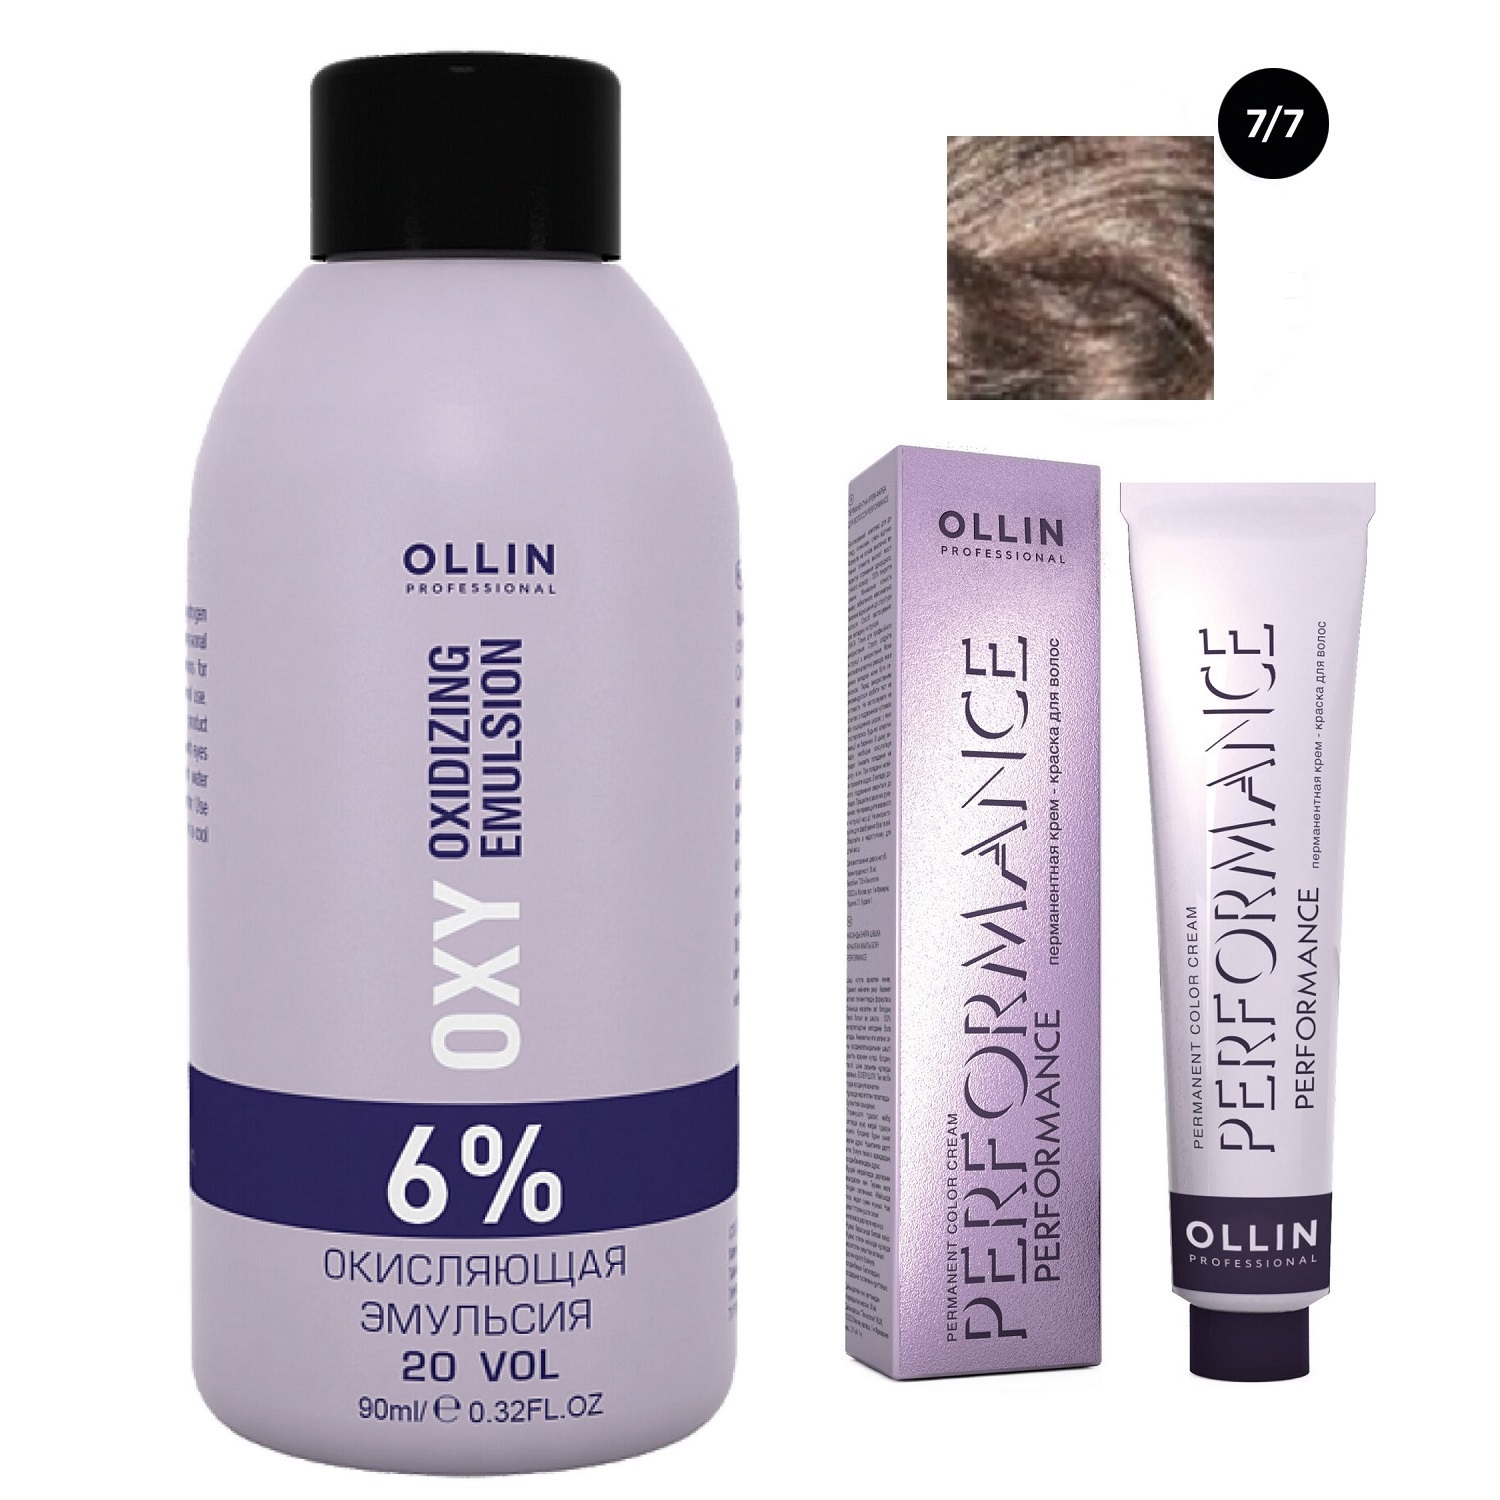 цена Ollin Professional Набор Перманентная крем-краска для волос Ollin Performance оттенок 7/7 русый коричневый 60 мл + Окисляющая эмульсия Oxy 6% 90 мл (Ollin Professional, Performance)